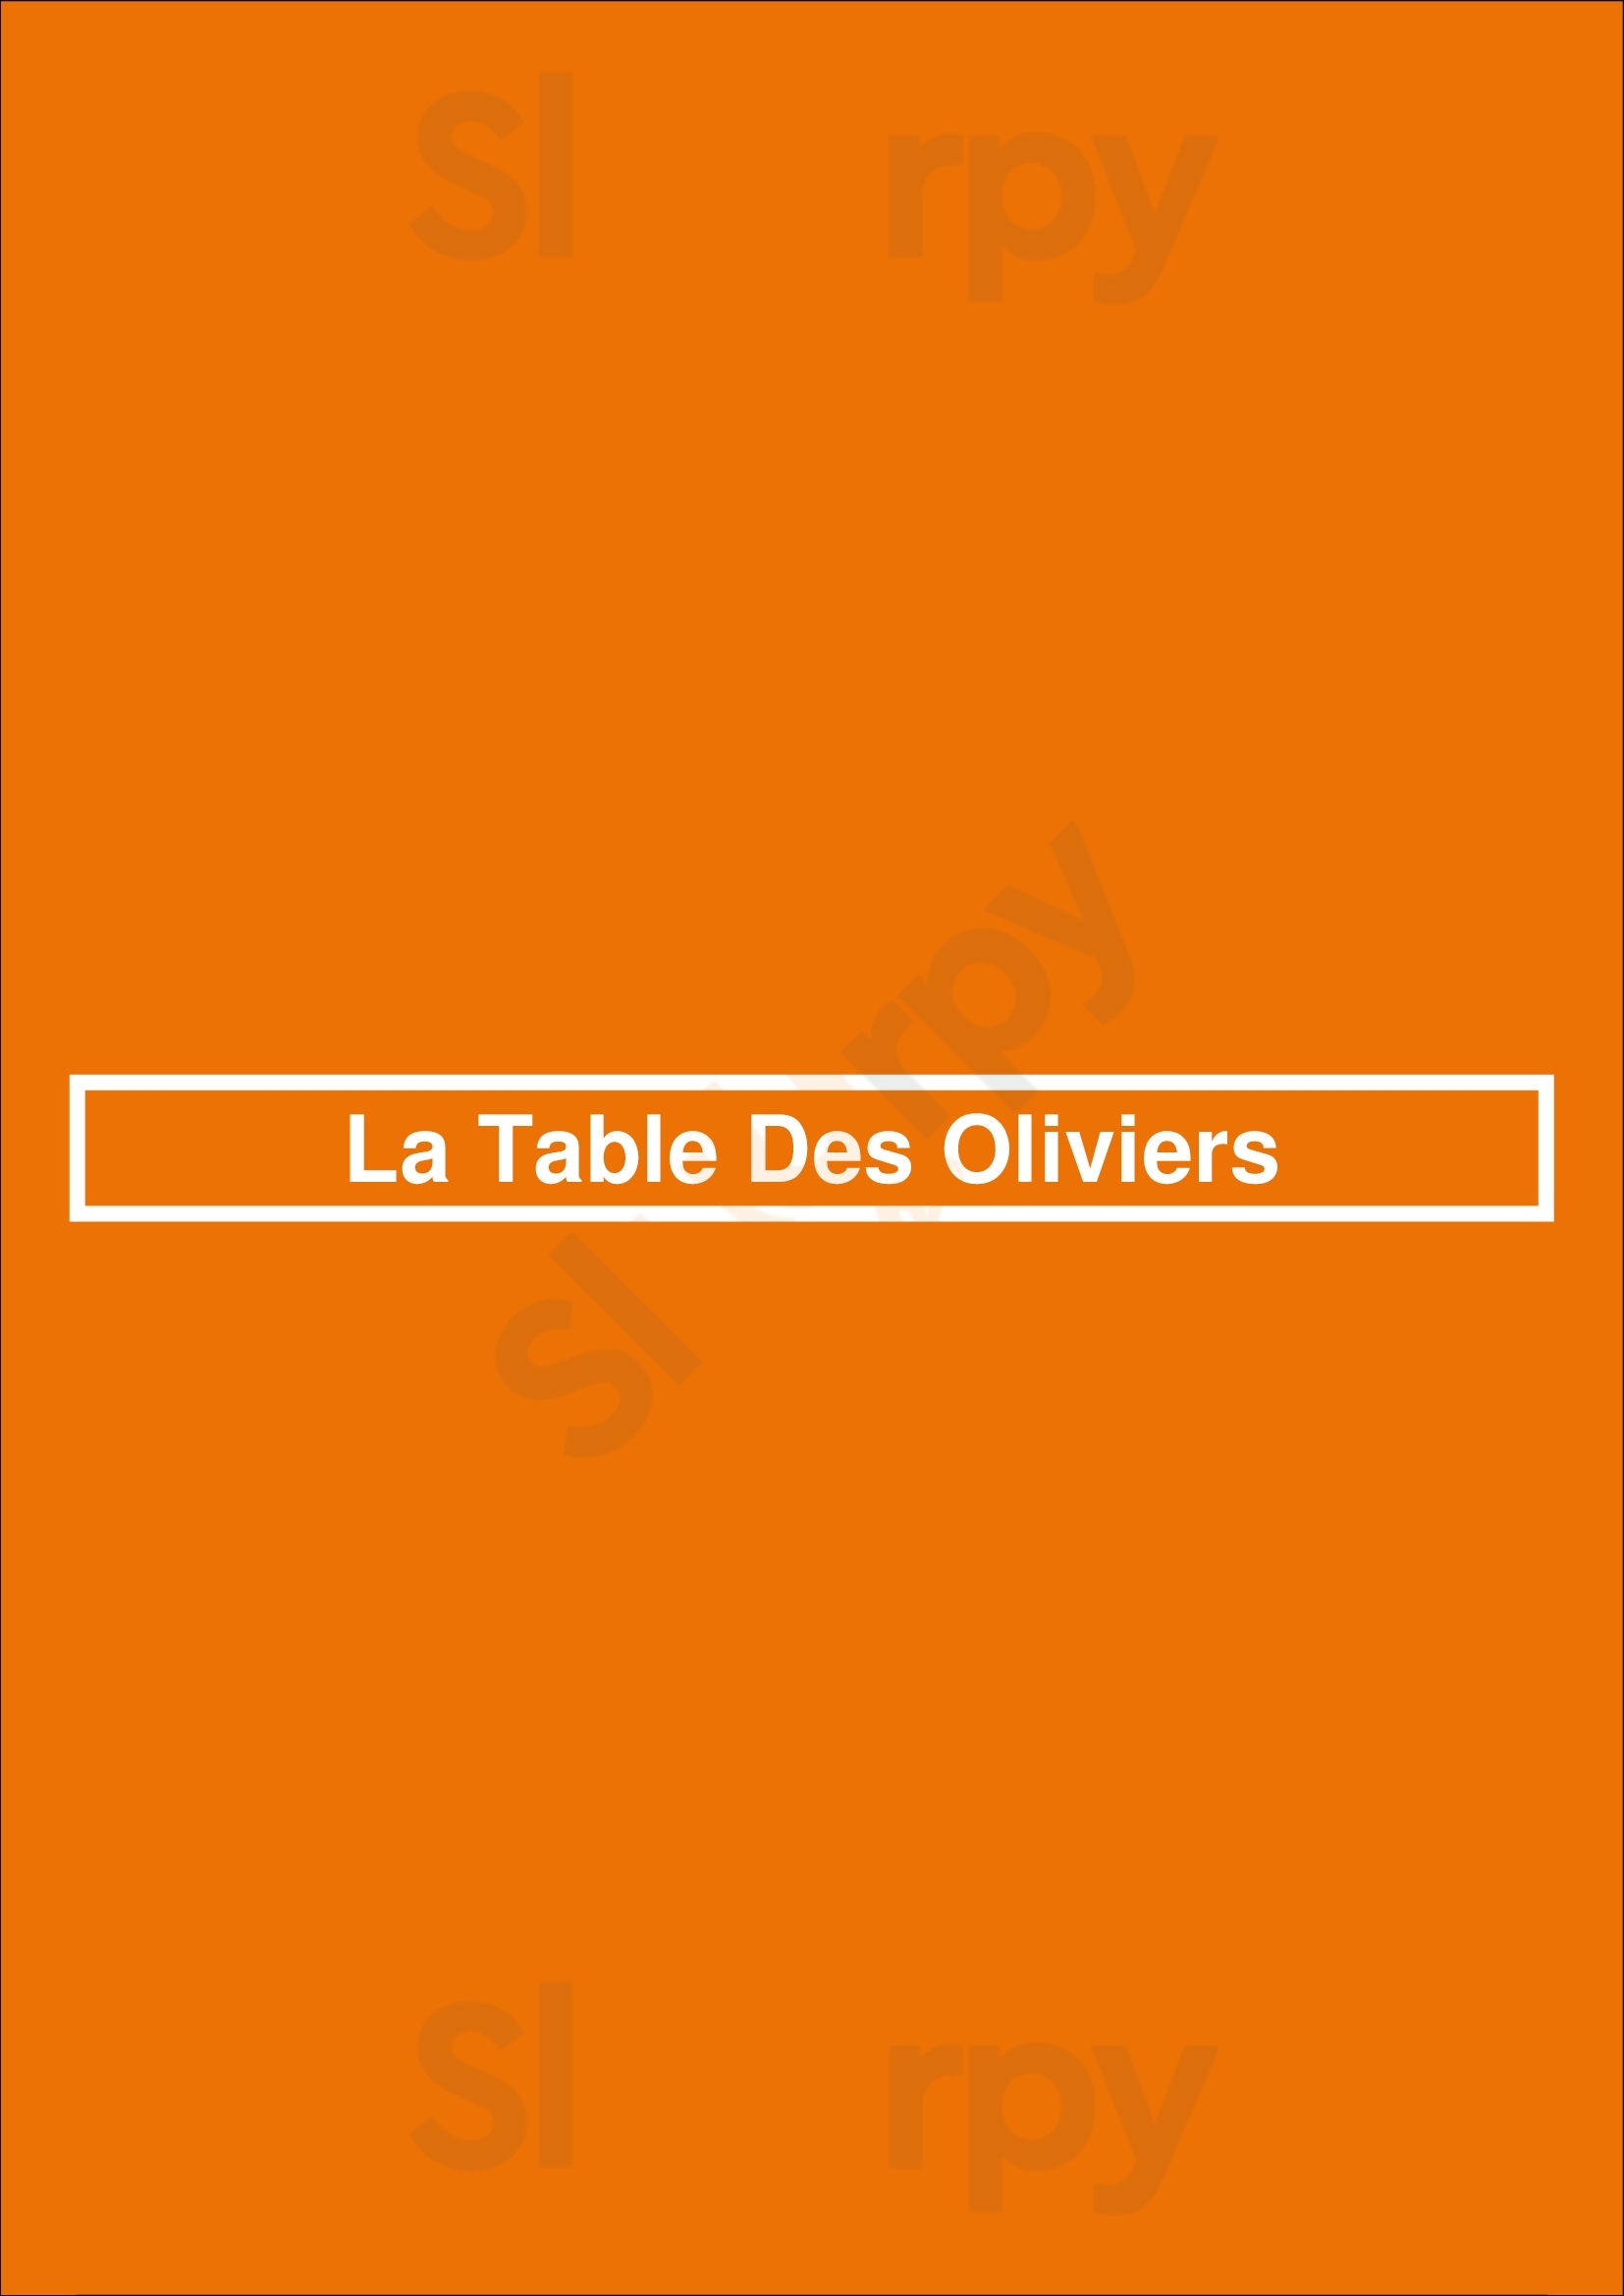 La Table Des Oliviers Neuilly-sur-Seine Menu - 1